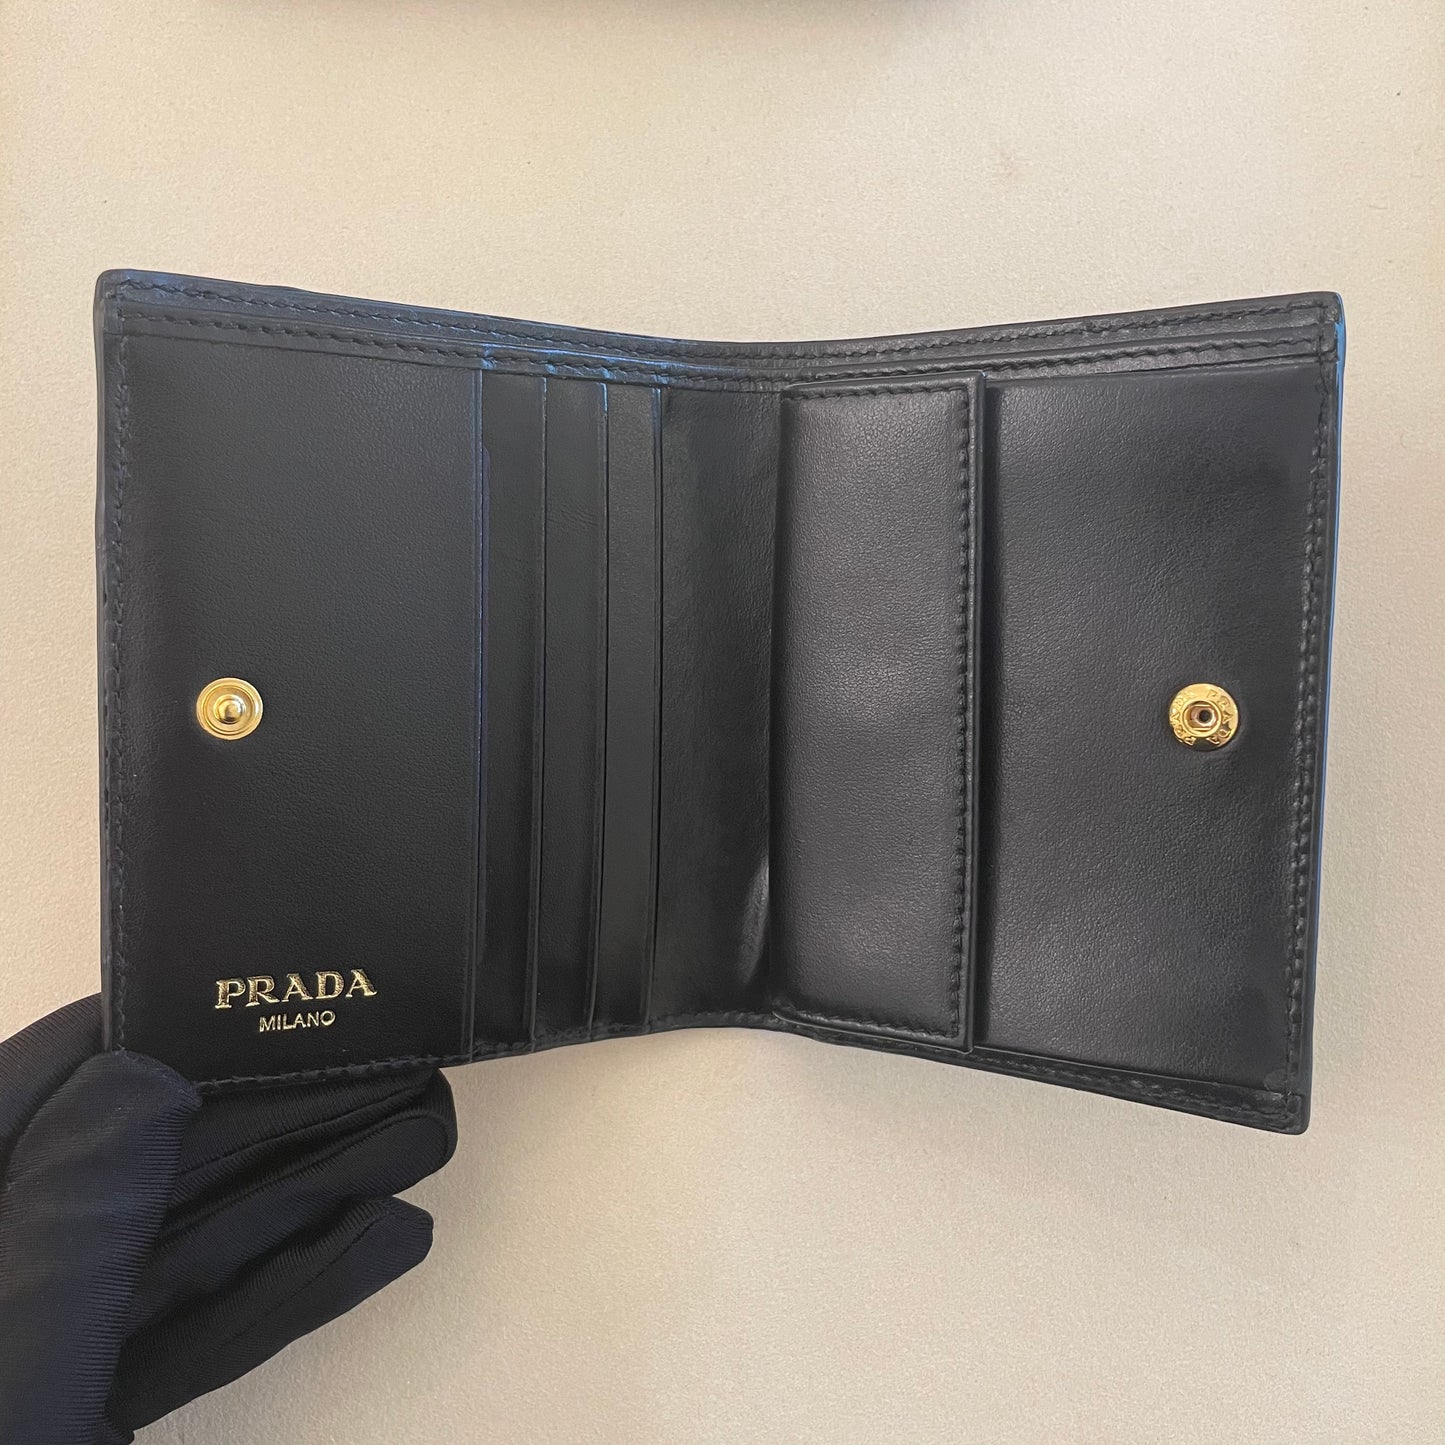 Prada Women's Compact Wallet